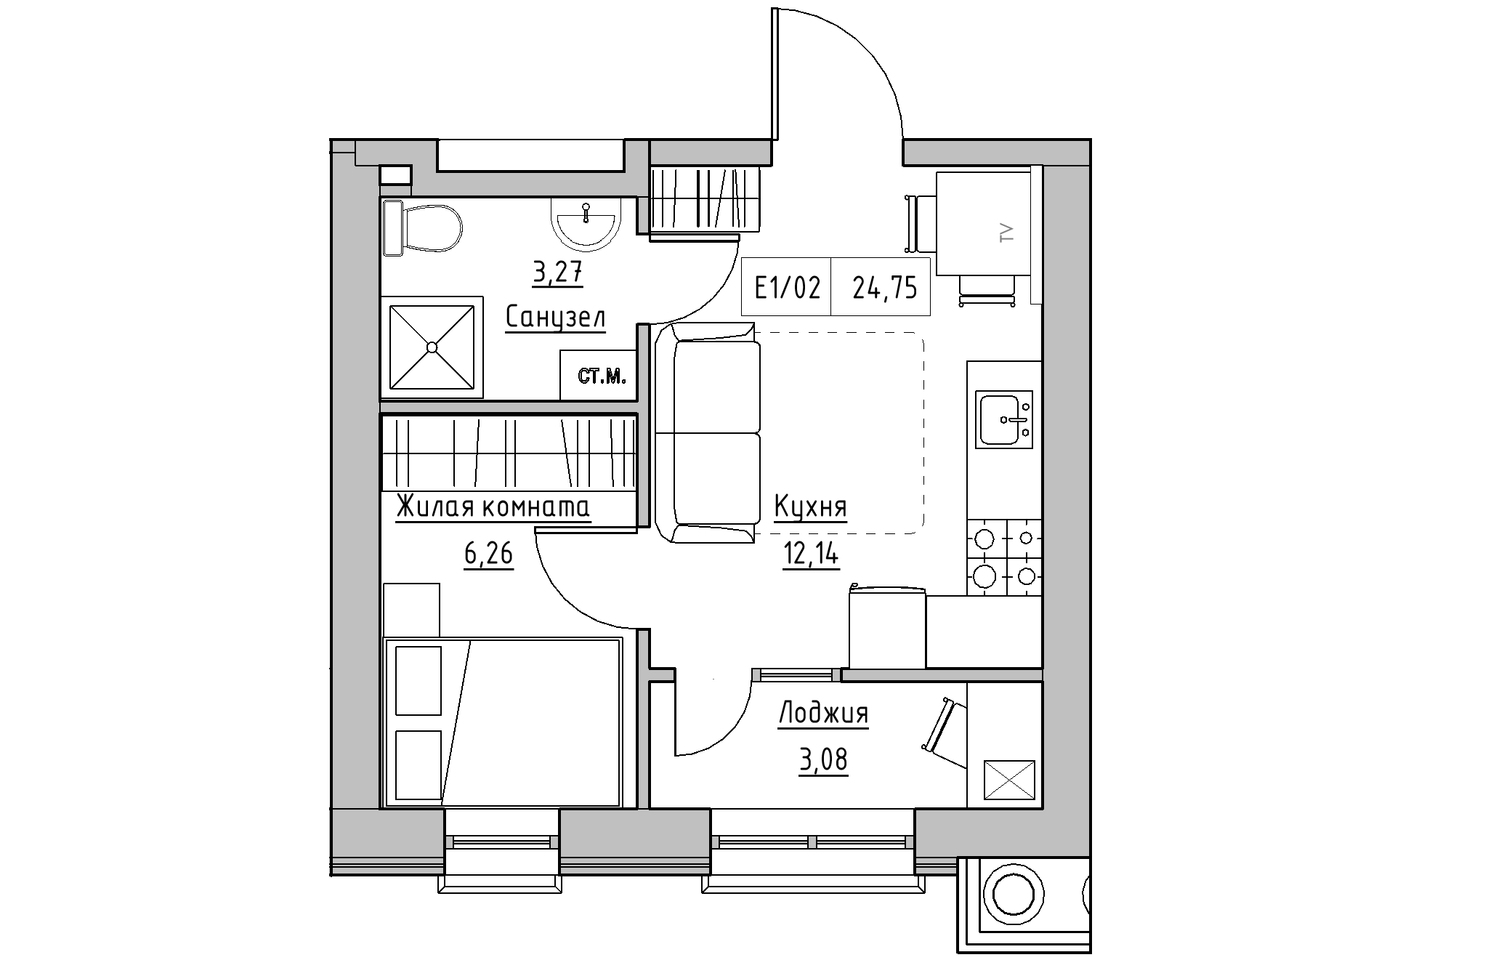 Планировка 1-к квартира площей 24.69м2, KS-010-05/0002.